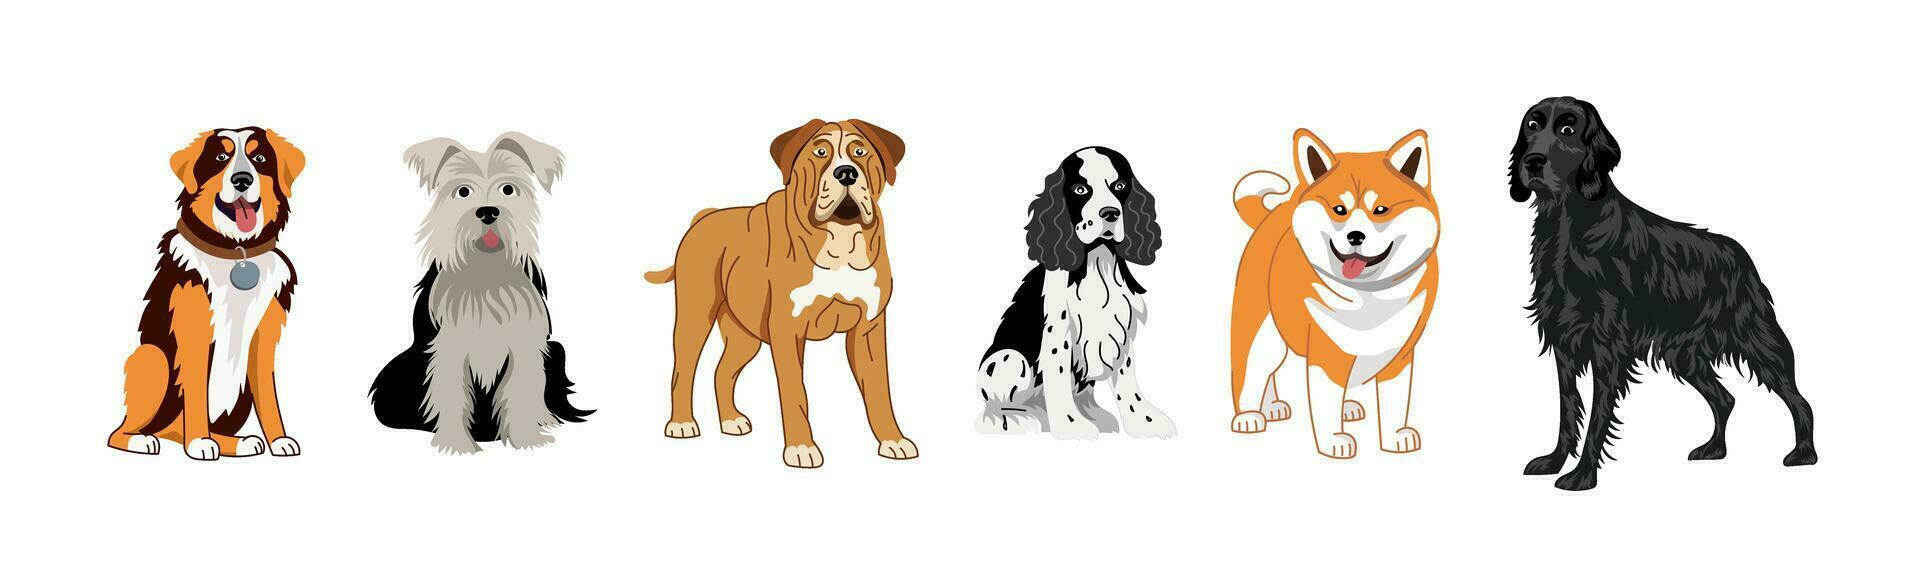 en uppsättning av hundar av annorlunda raser. vektor illustration på en vit bakgrund av en setter, spaniel, terrier, mastiff, shiba inu, akita.